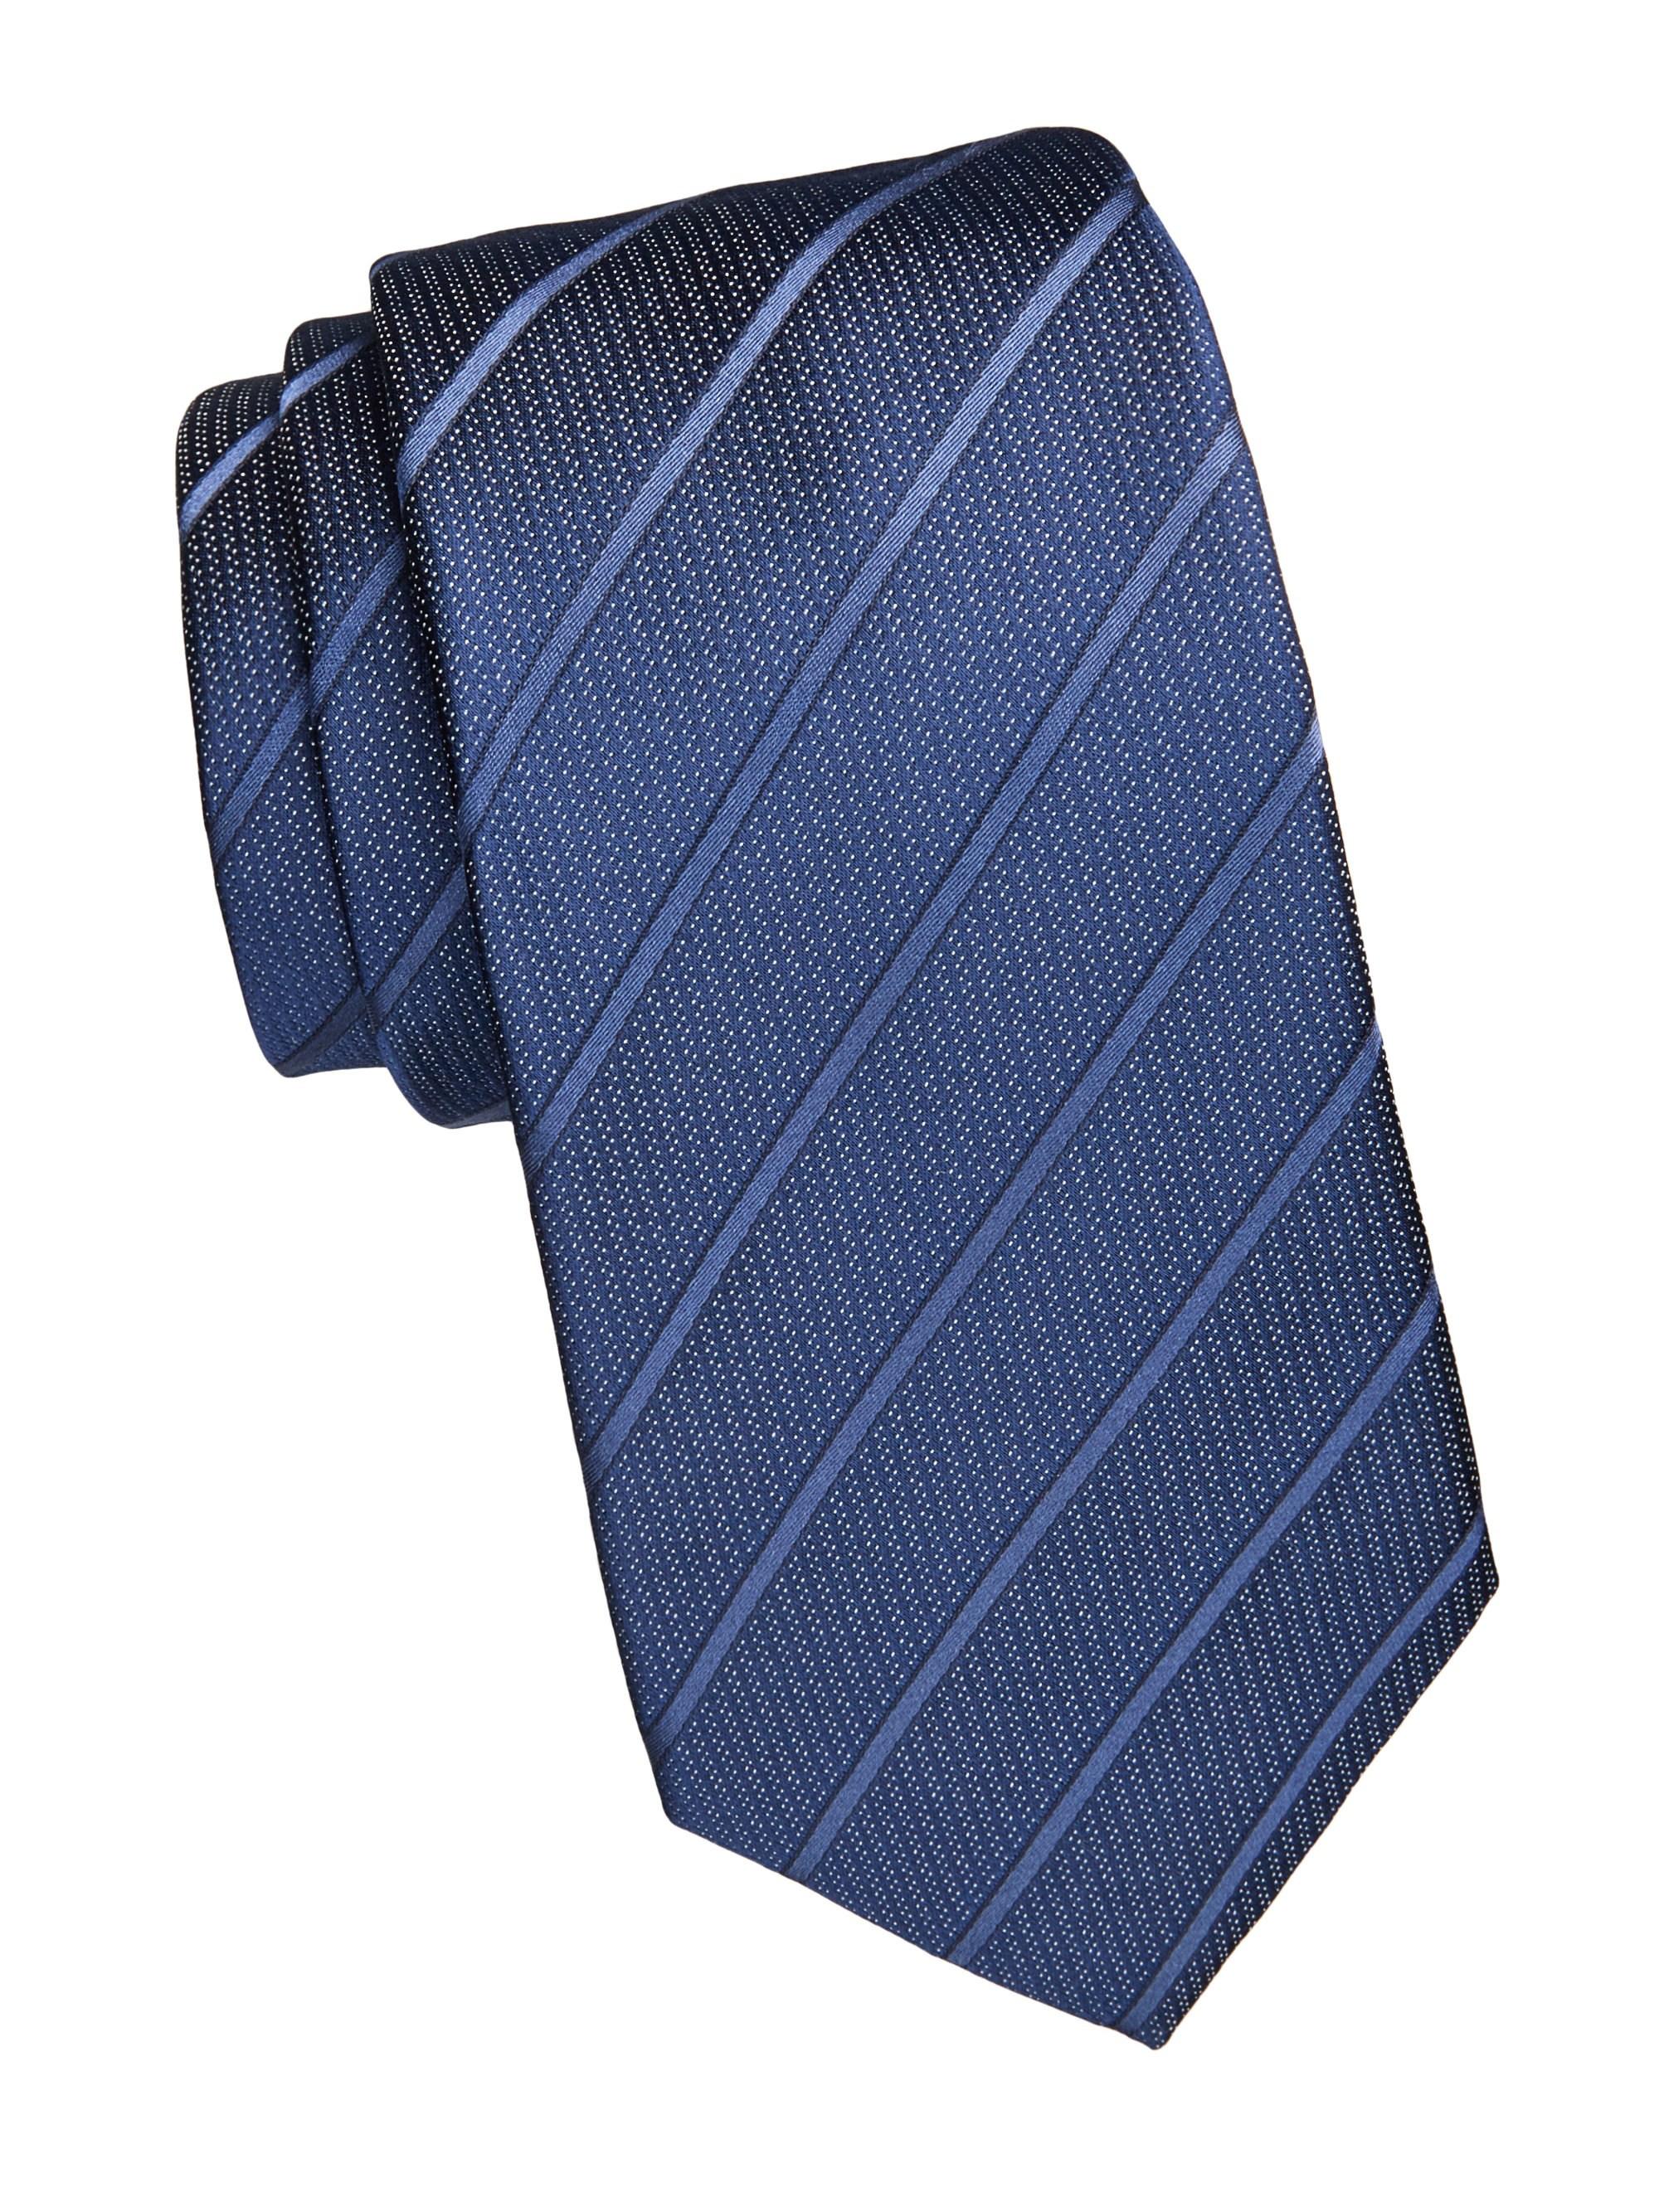 Emporio Armani Tonal Stripe Silk Tie in Blue for Men - Lyst